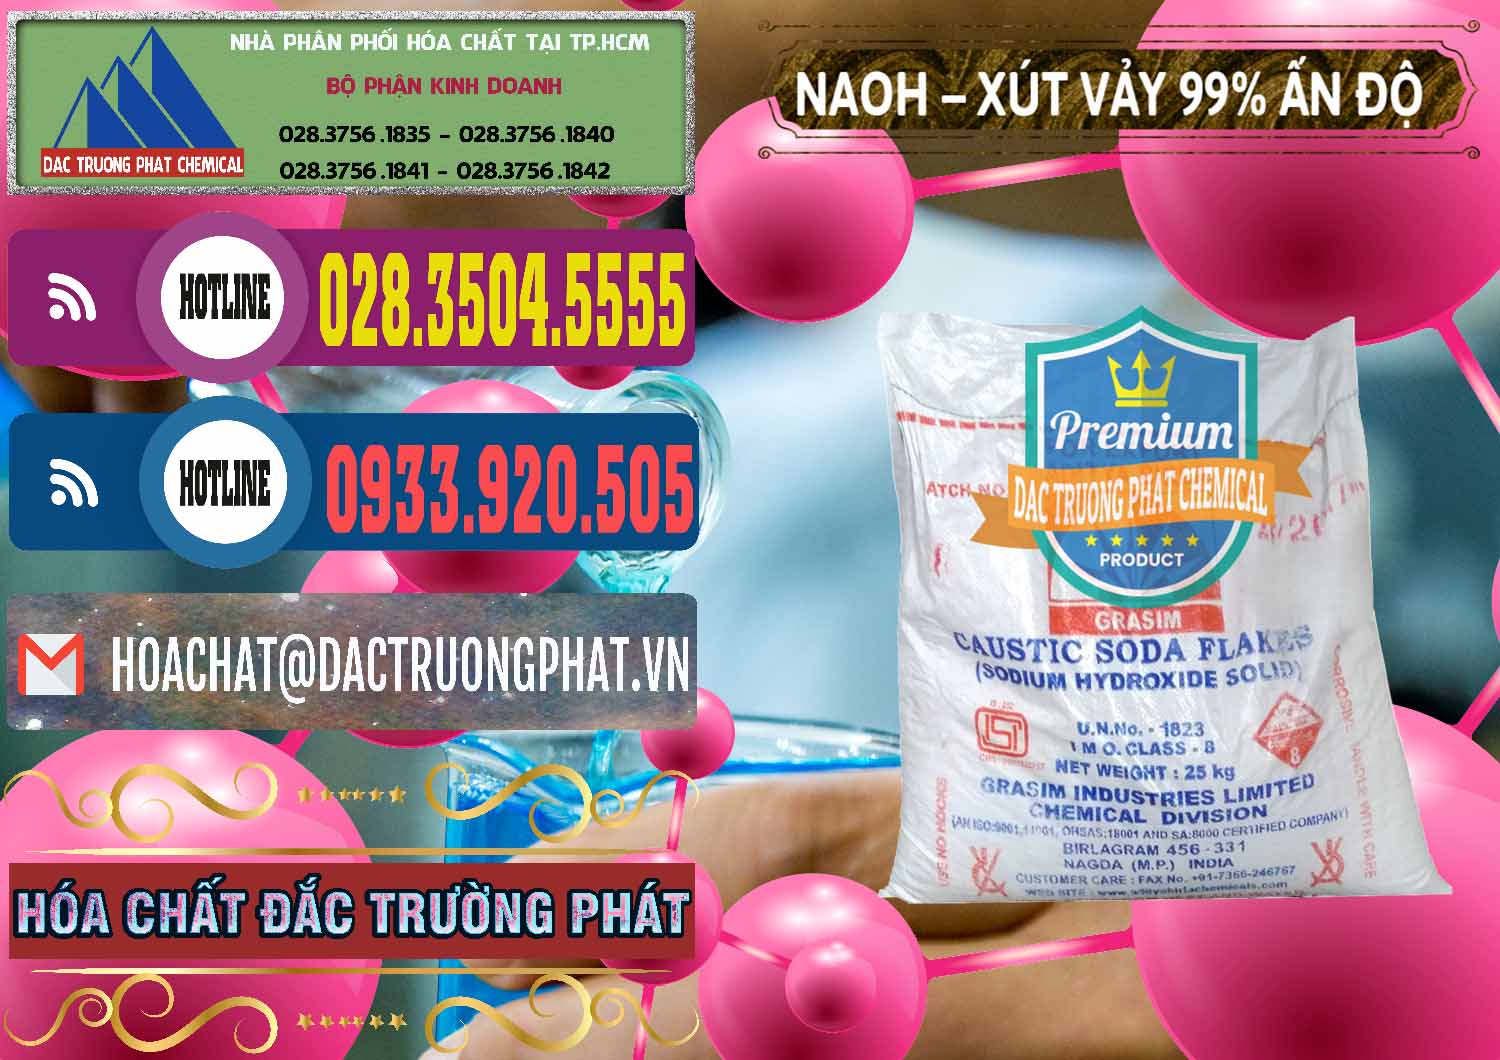 Nhà cung cấp _ bán Xút Vảy - NaOH Vảy 99% Aditya Birla Grasim Ấn Độ India - 0171 - Chuyên phân phối - cung ứng hóa chất tại TP.HCM - muabanhoachat.com.vn